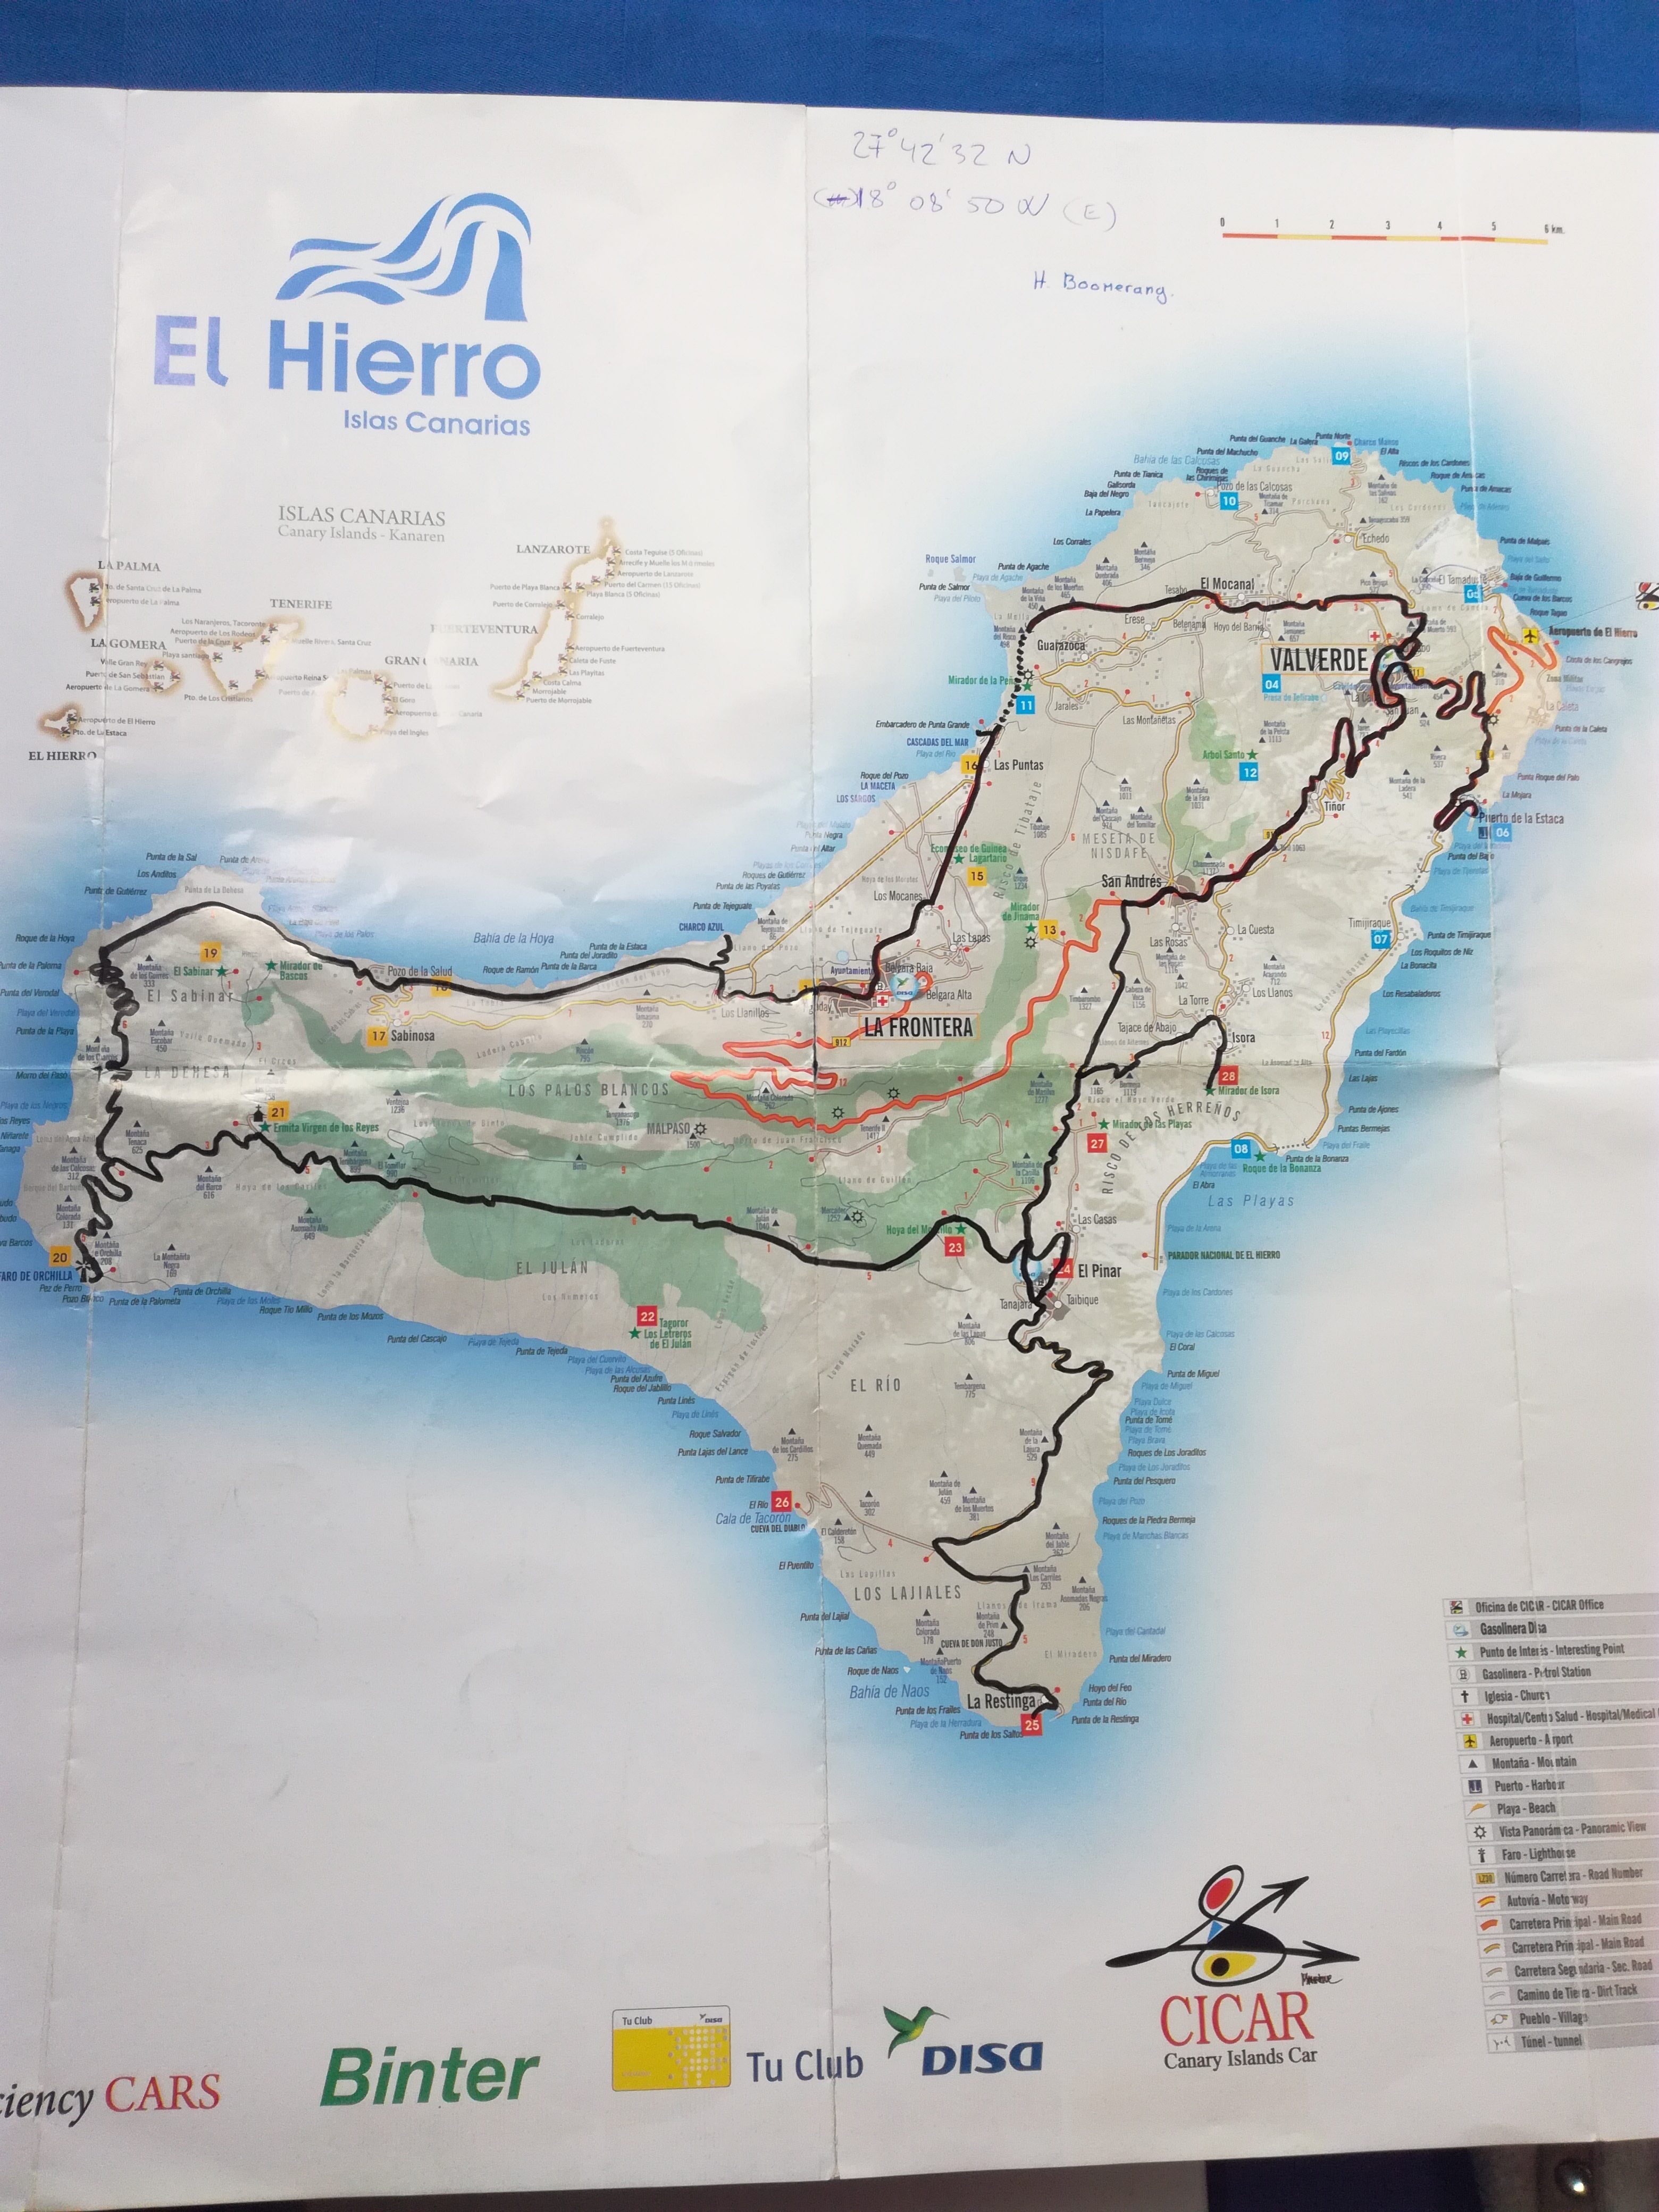 Køretur på El Hierro